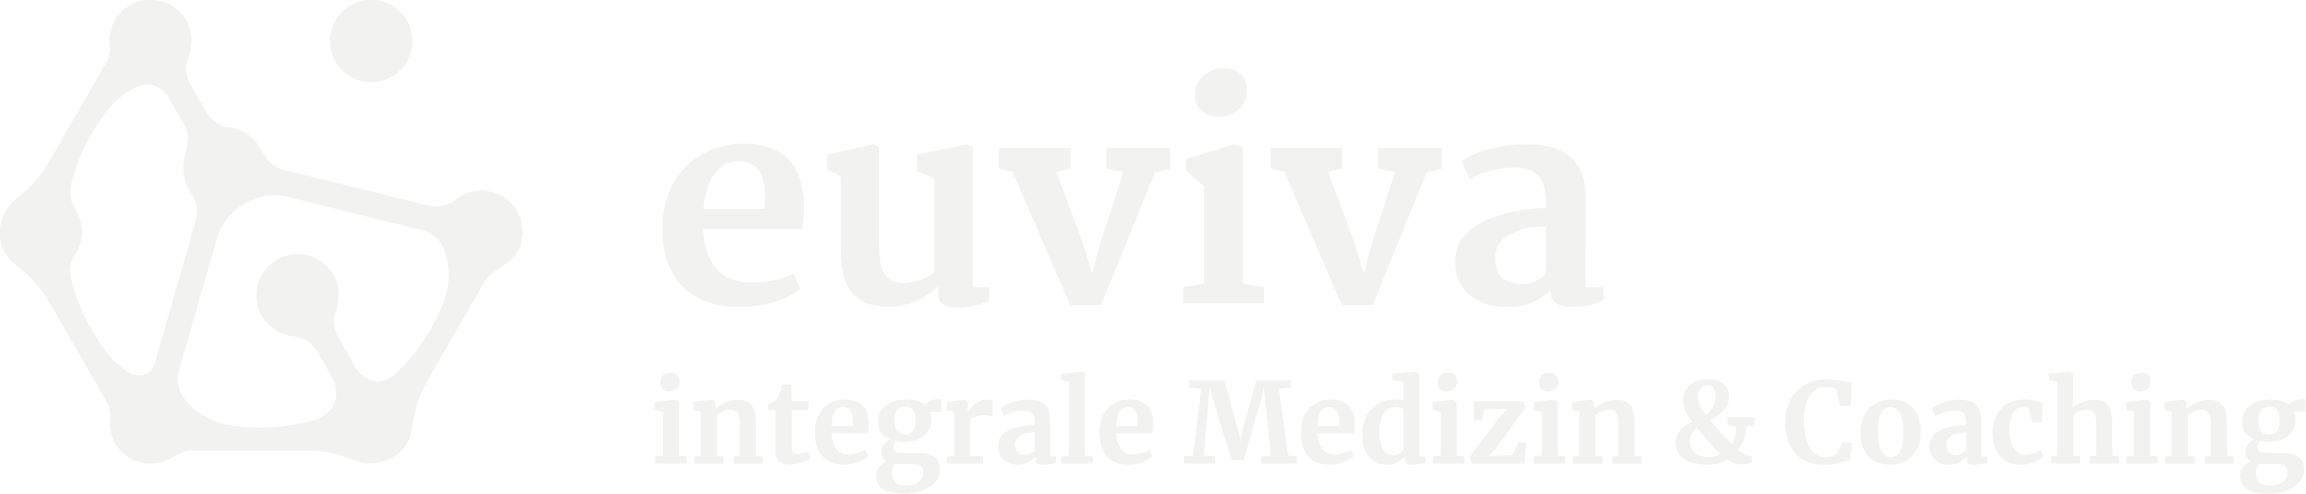 logo_euviva_9